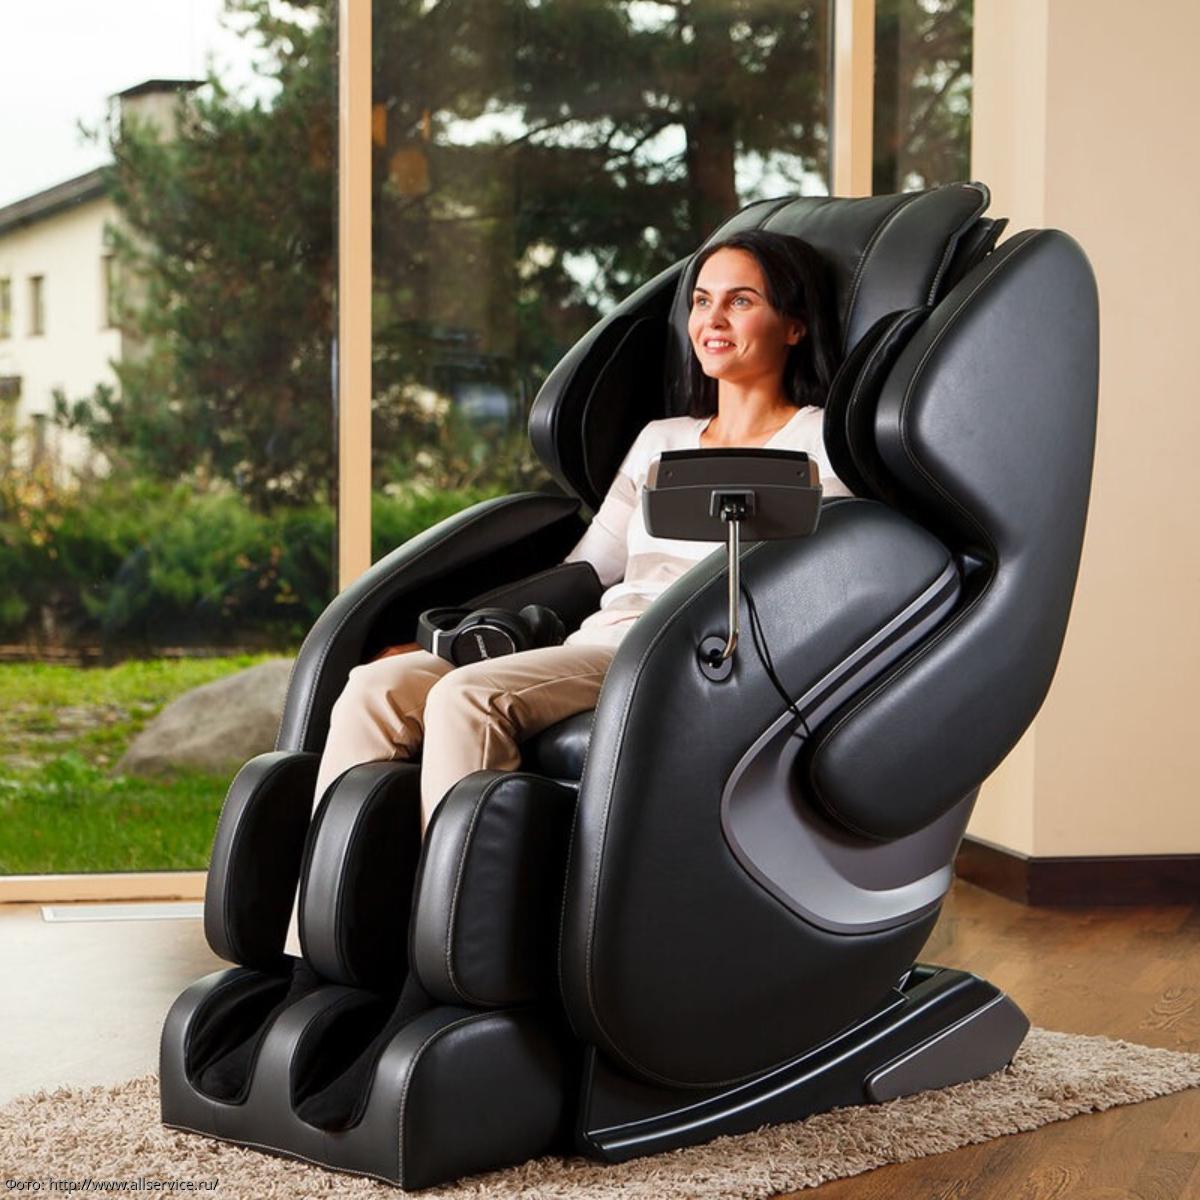 массажные кресла из китая высокого качества